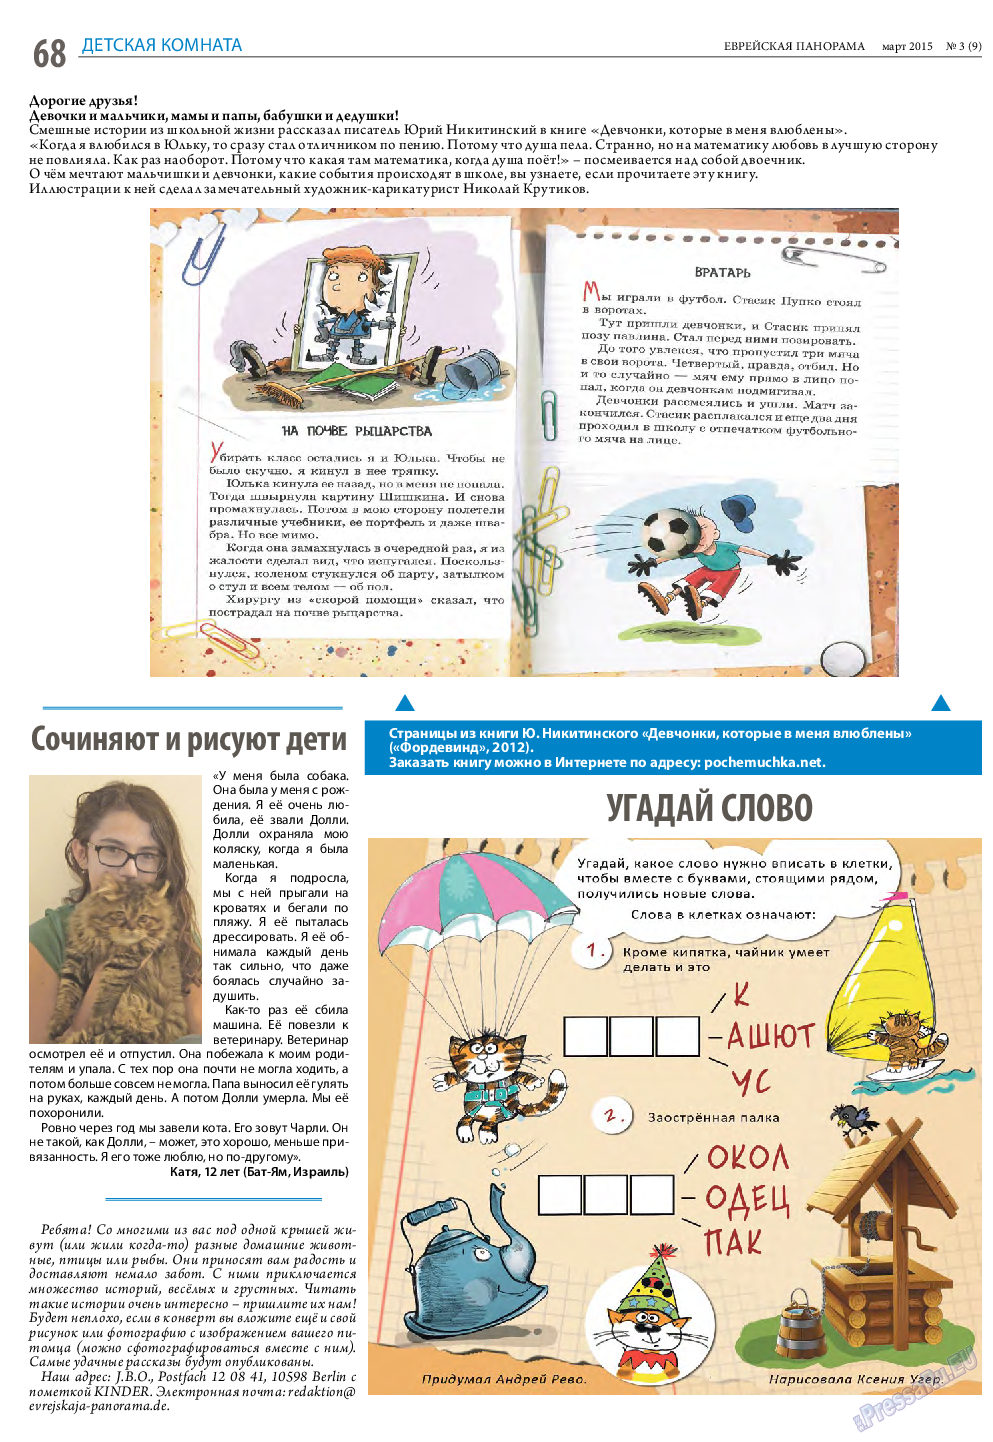 Еврейская панорама (газета). 2015 год, номер 3, стр. 68